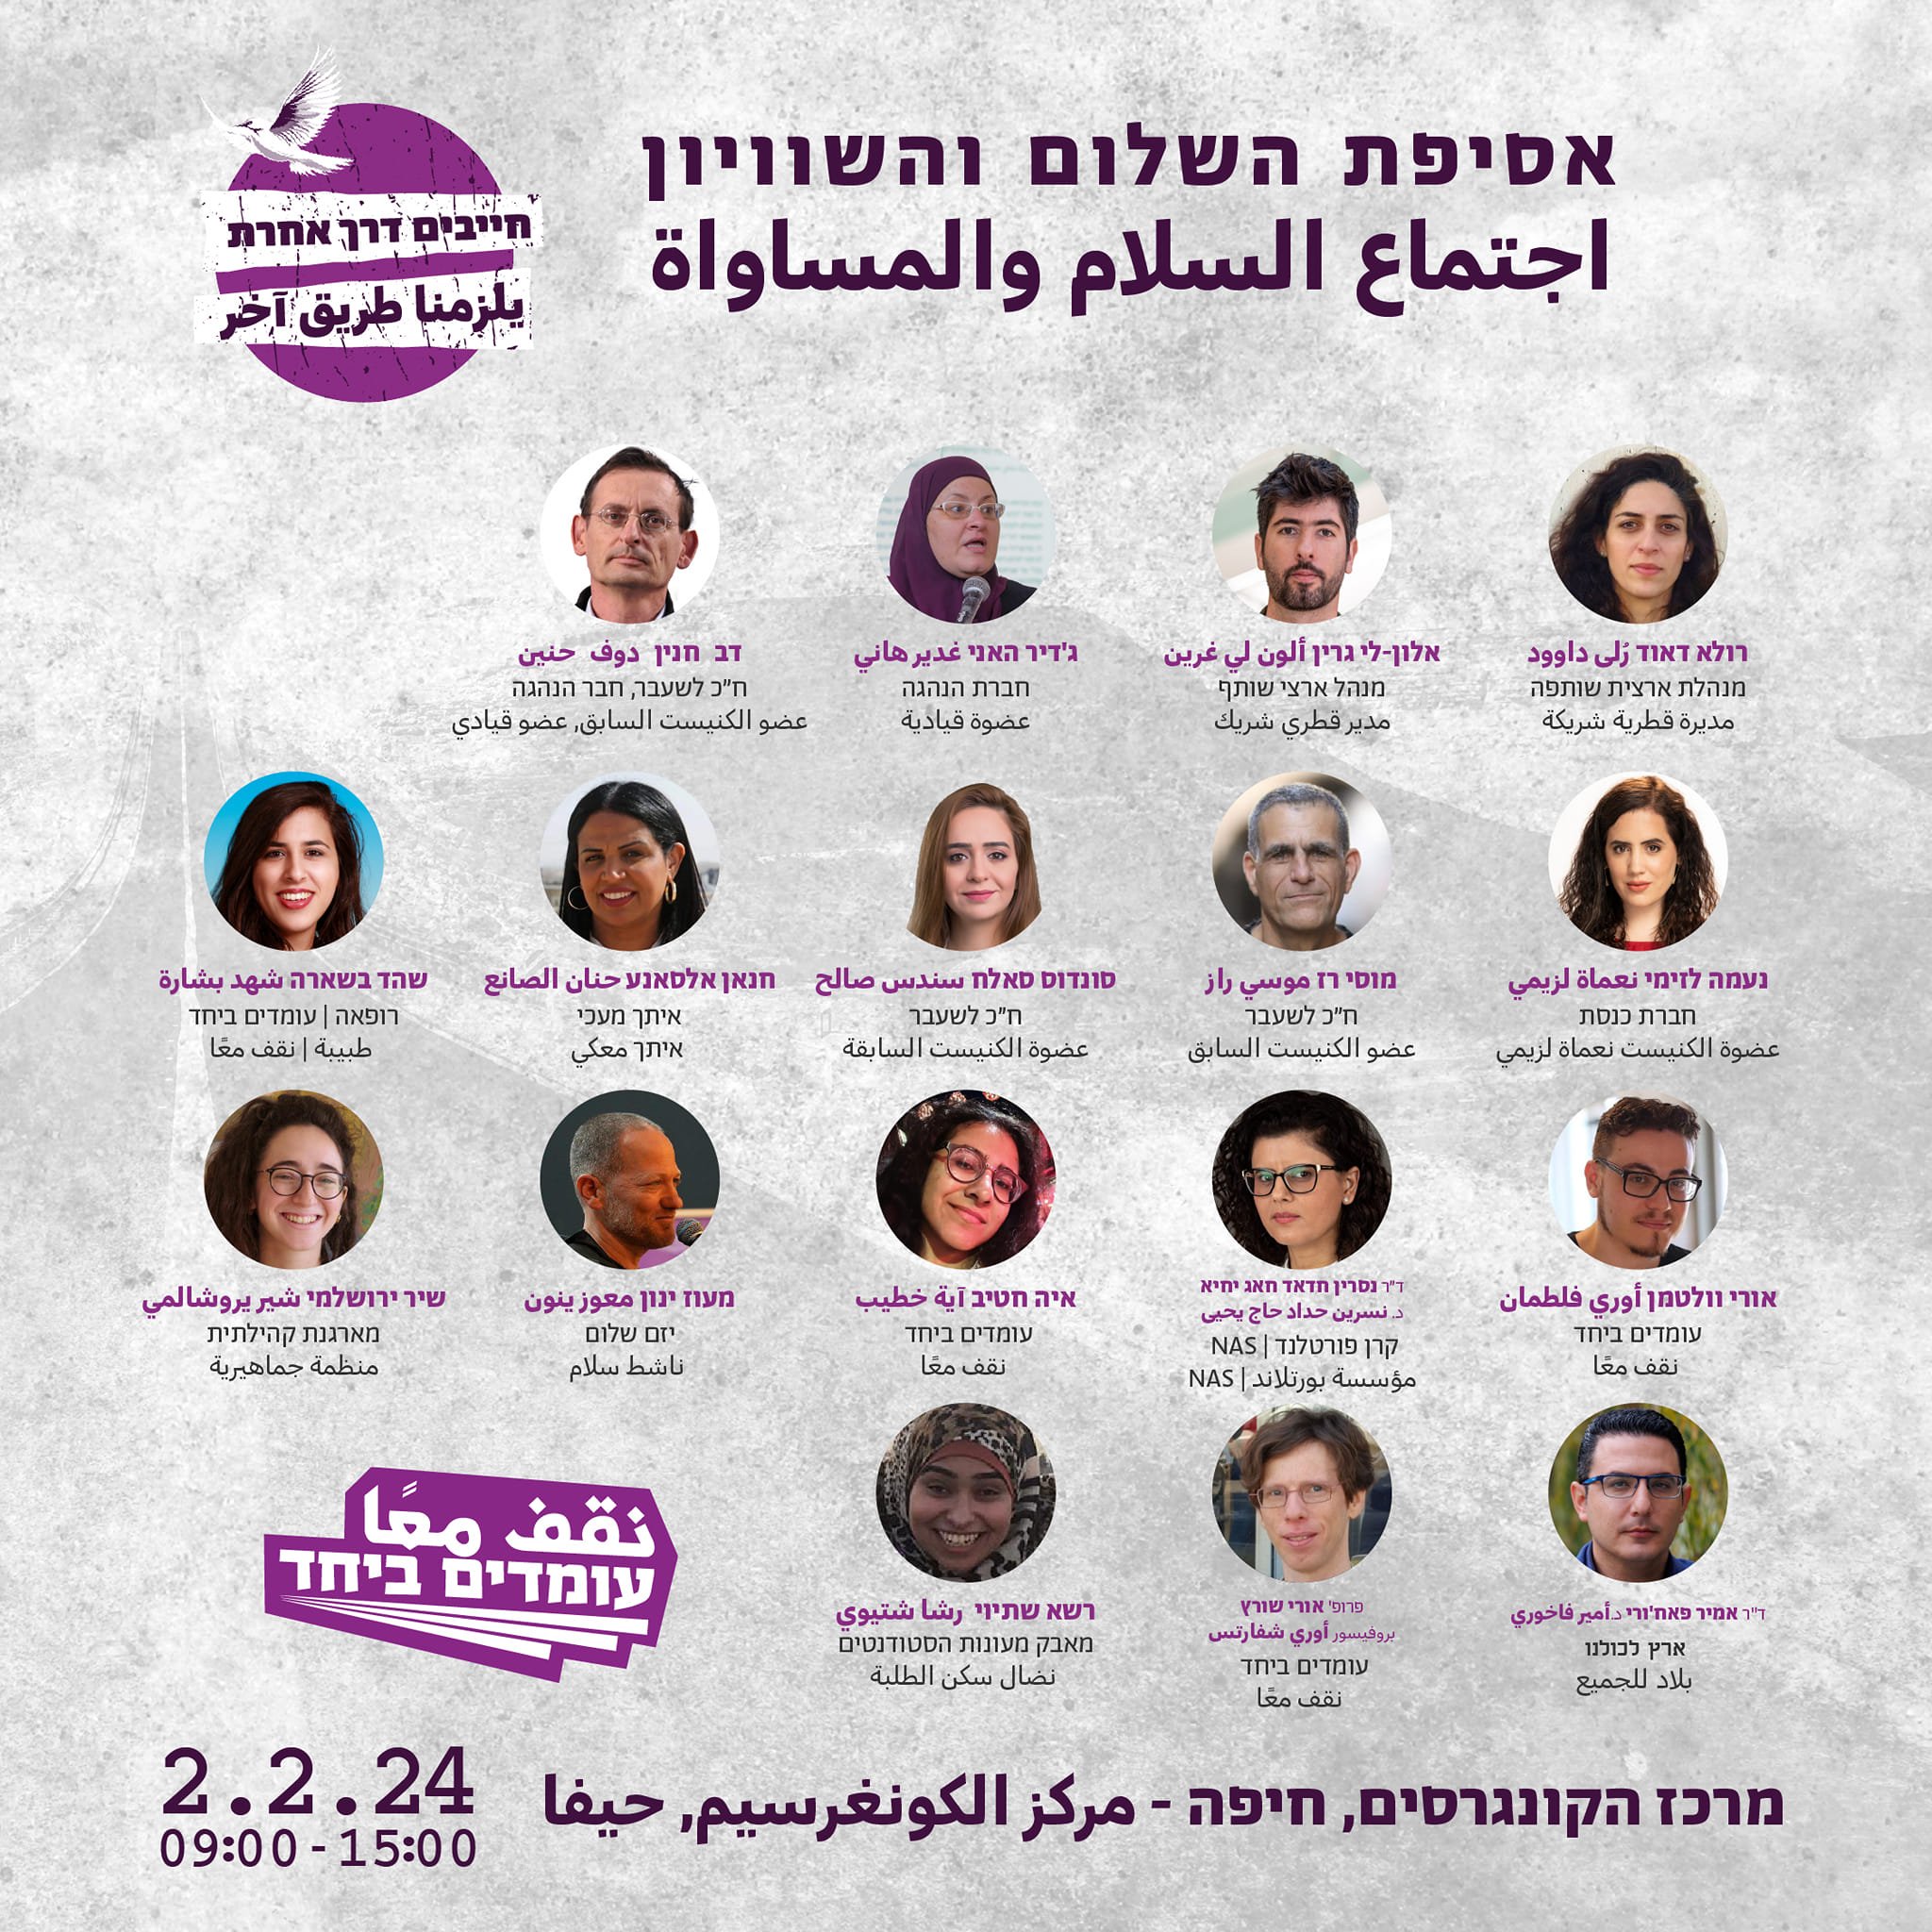 غدًا الجمعة في حيفا: نقف معًا يقعد اجتماع القطري العام تحت عنوان "اجتماع السلام والمساواة"-0